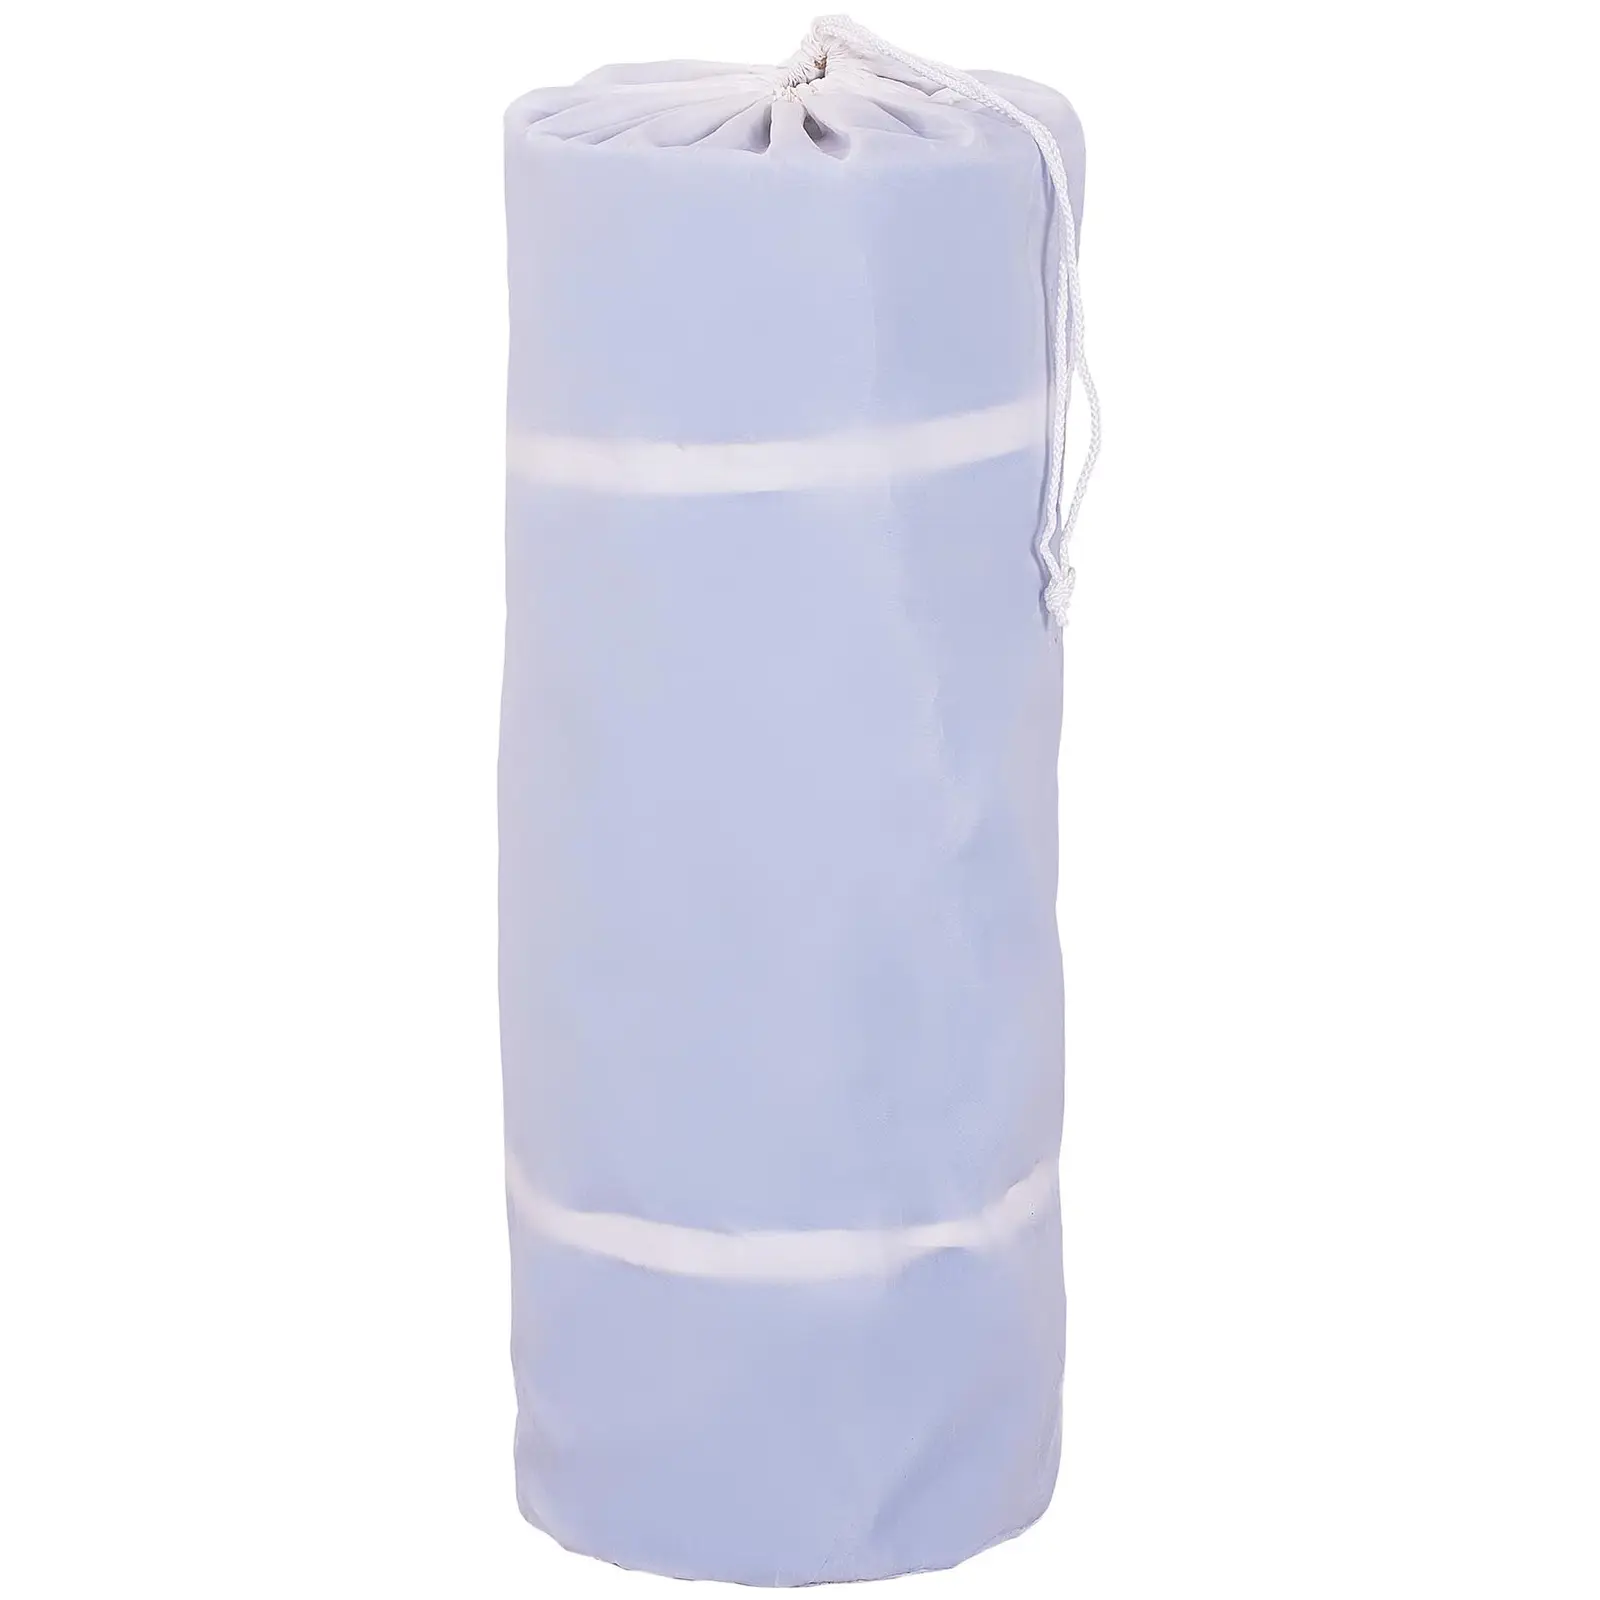 Colchoneta de gimnasia - 300 x 100 x 20 cm - 150 kg - azul/blanco